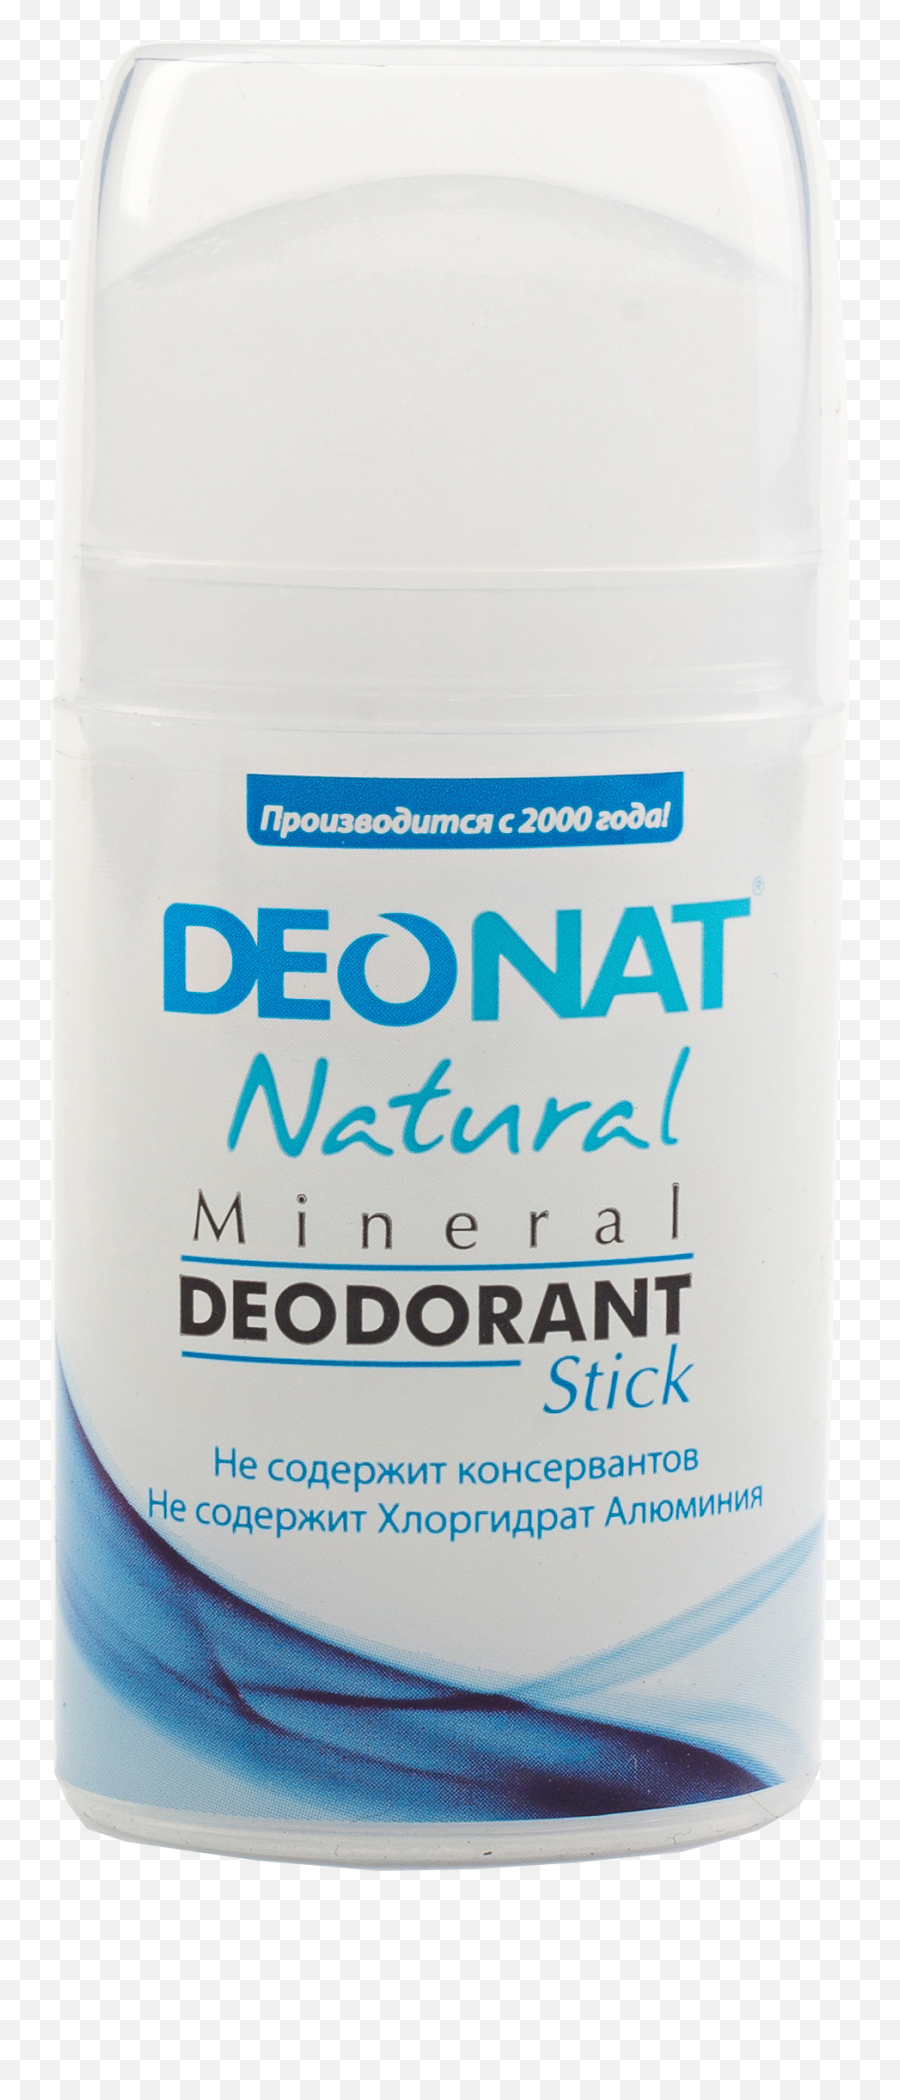 Deodorant Png - Cosmetics,Deodorant Png